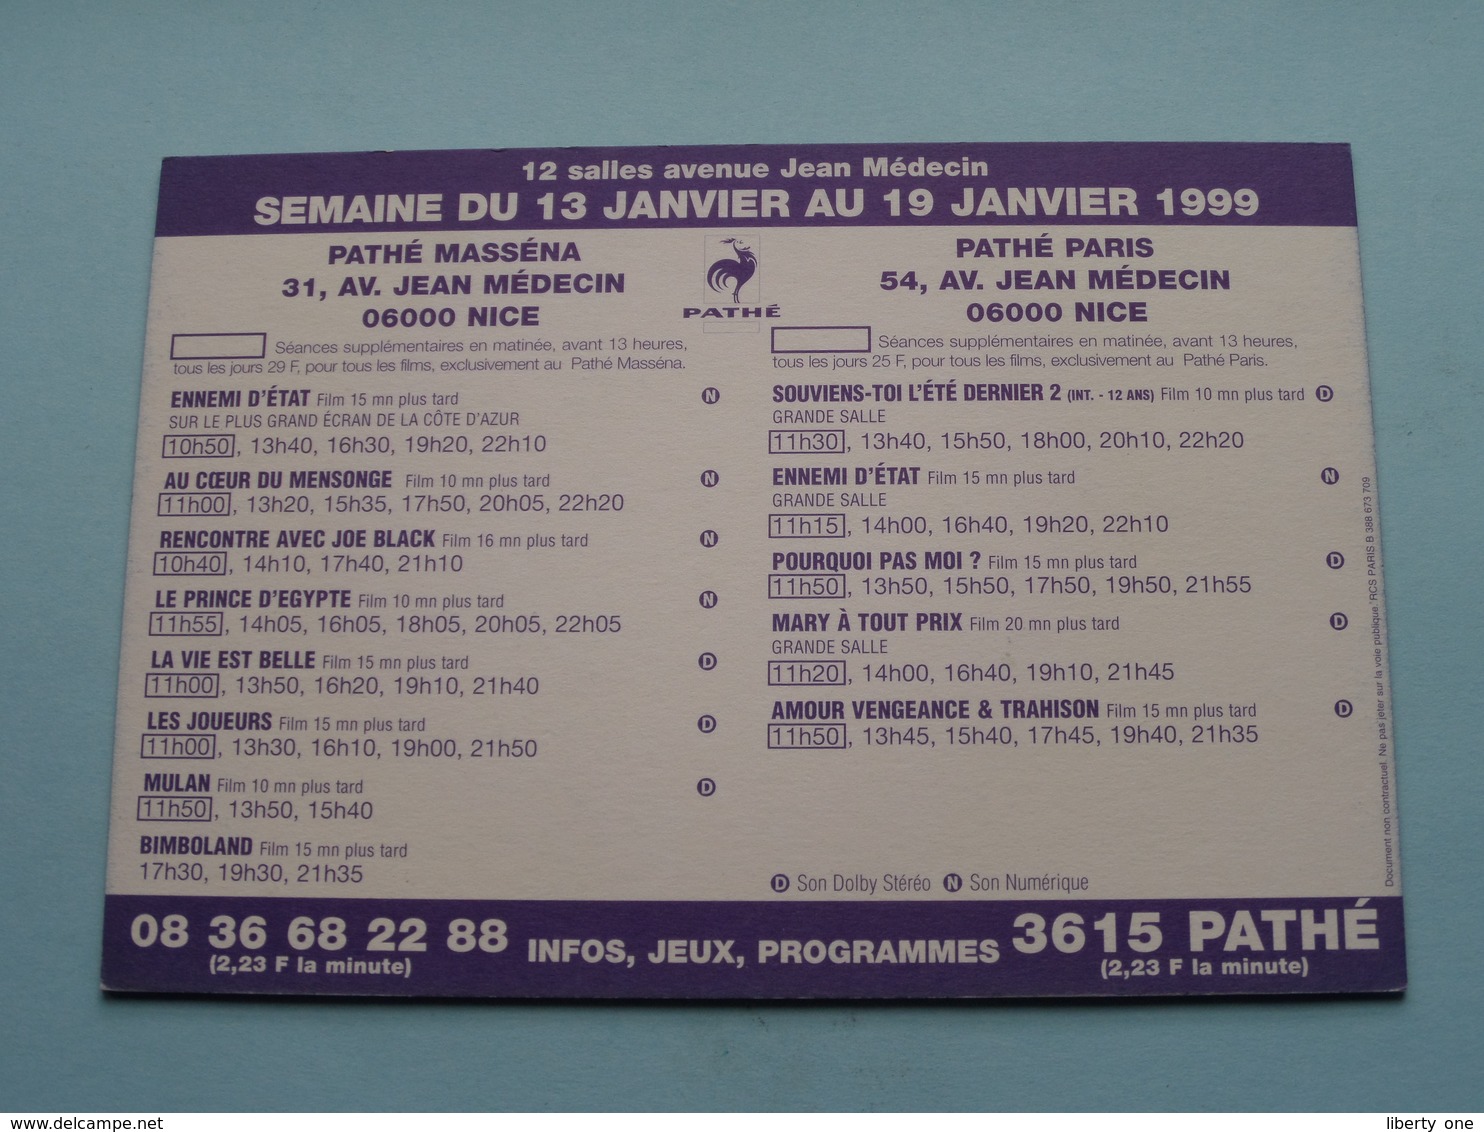 VOUS AVEZ UN MESS@GE > Pathé NICE ( Programme ) 1999 ( Voir Photo > 2 Scan ) ! - Pubblicitari